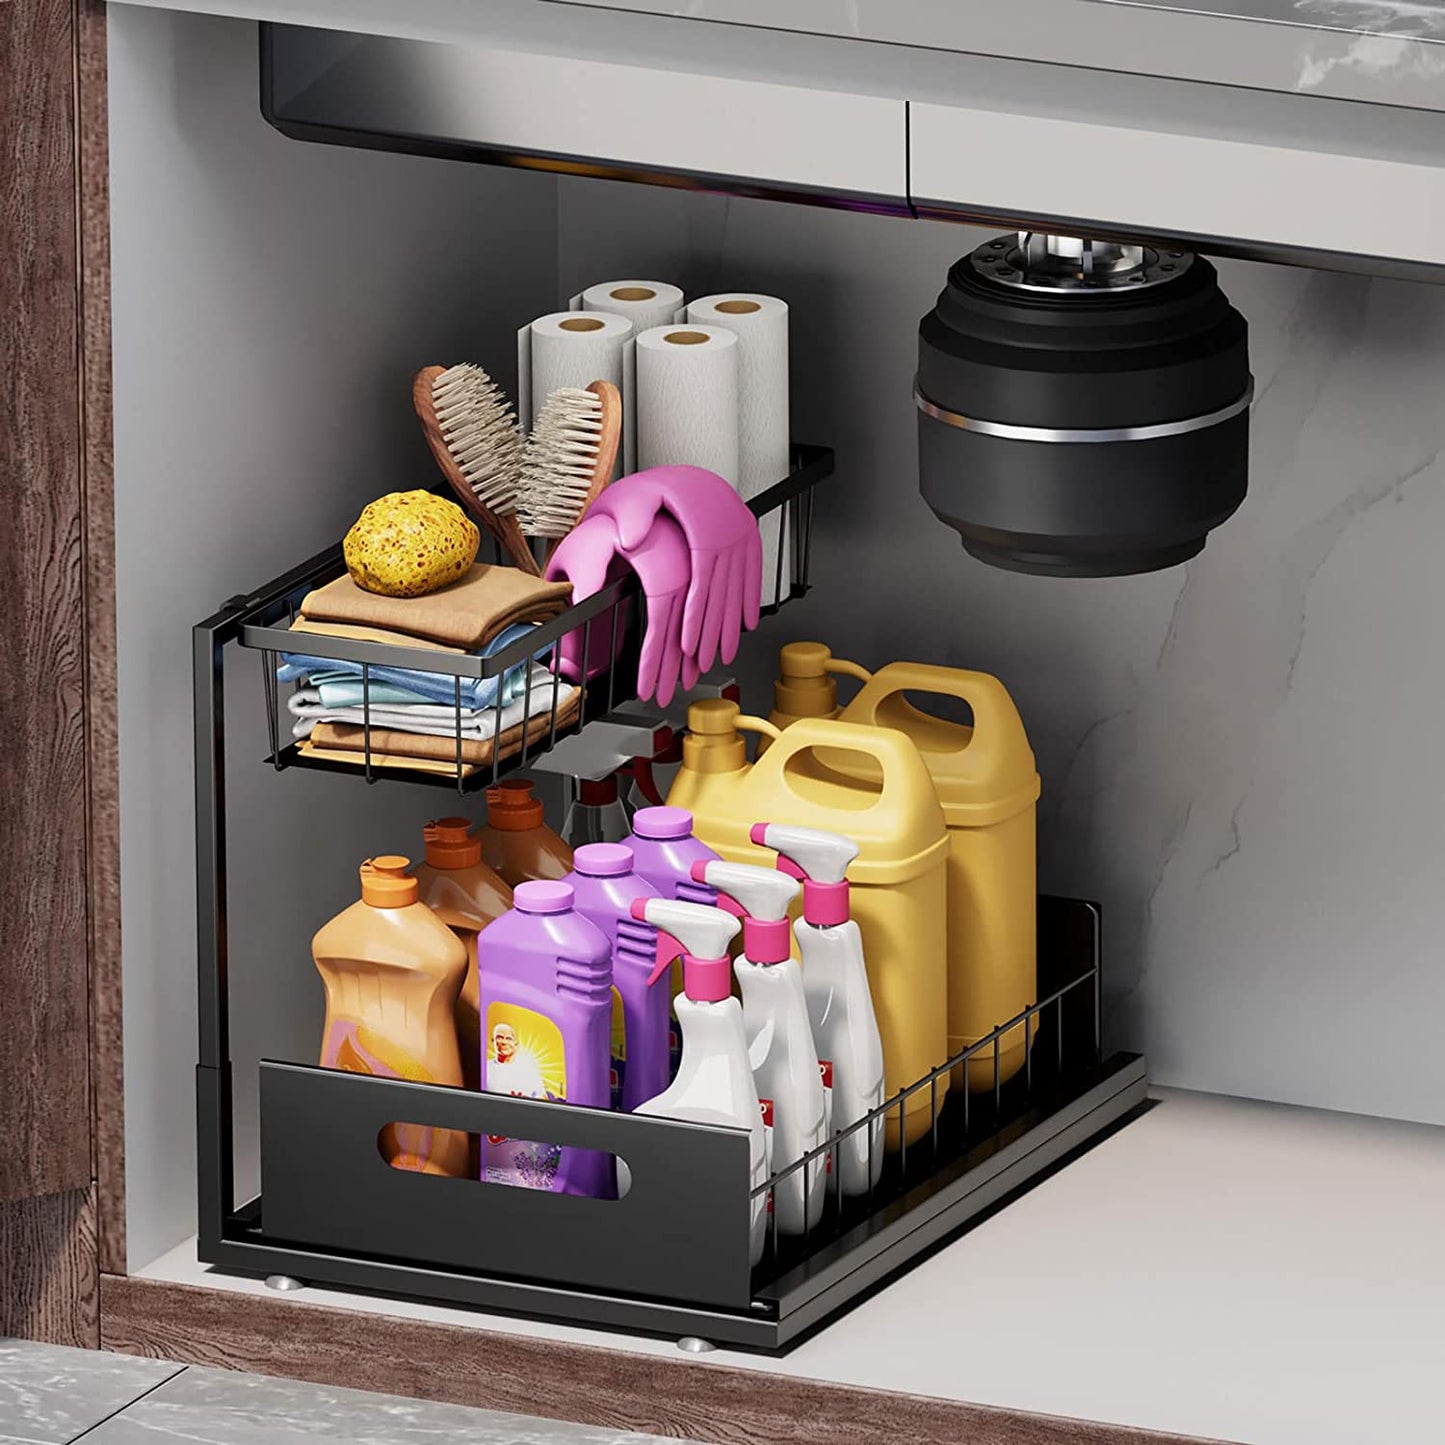 under Sink Organizers and Storage 2 Tier Slide Out Kitchen Cabinet Organizer Sturdy Metal Bathroom Storage, Black